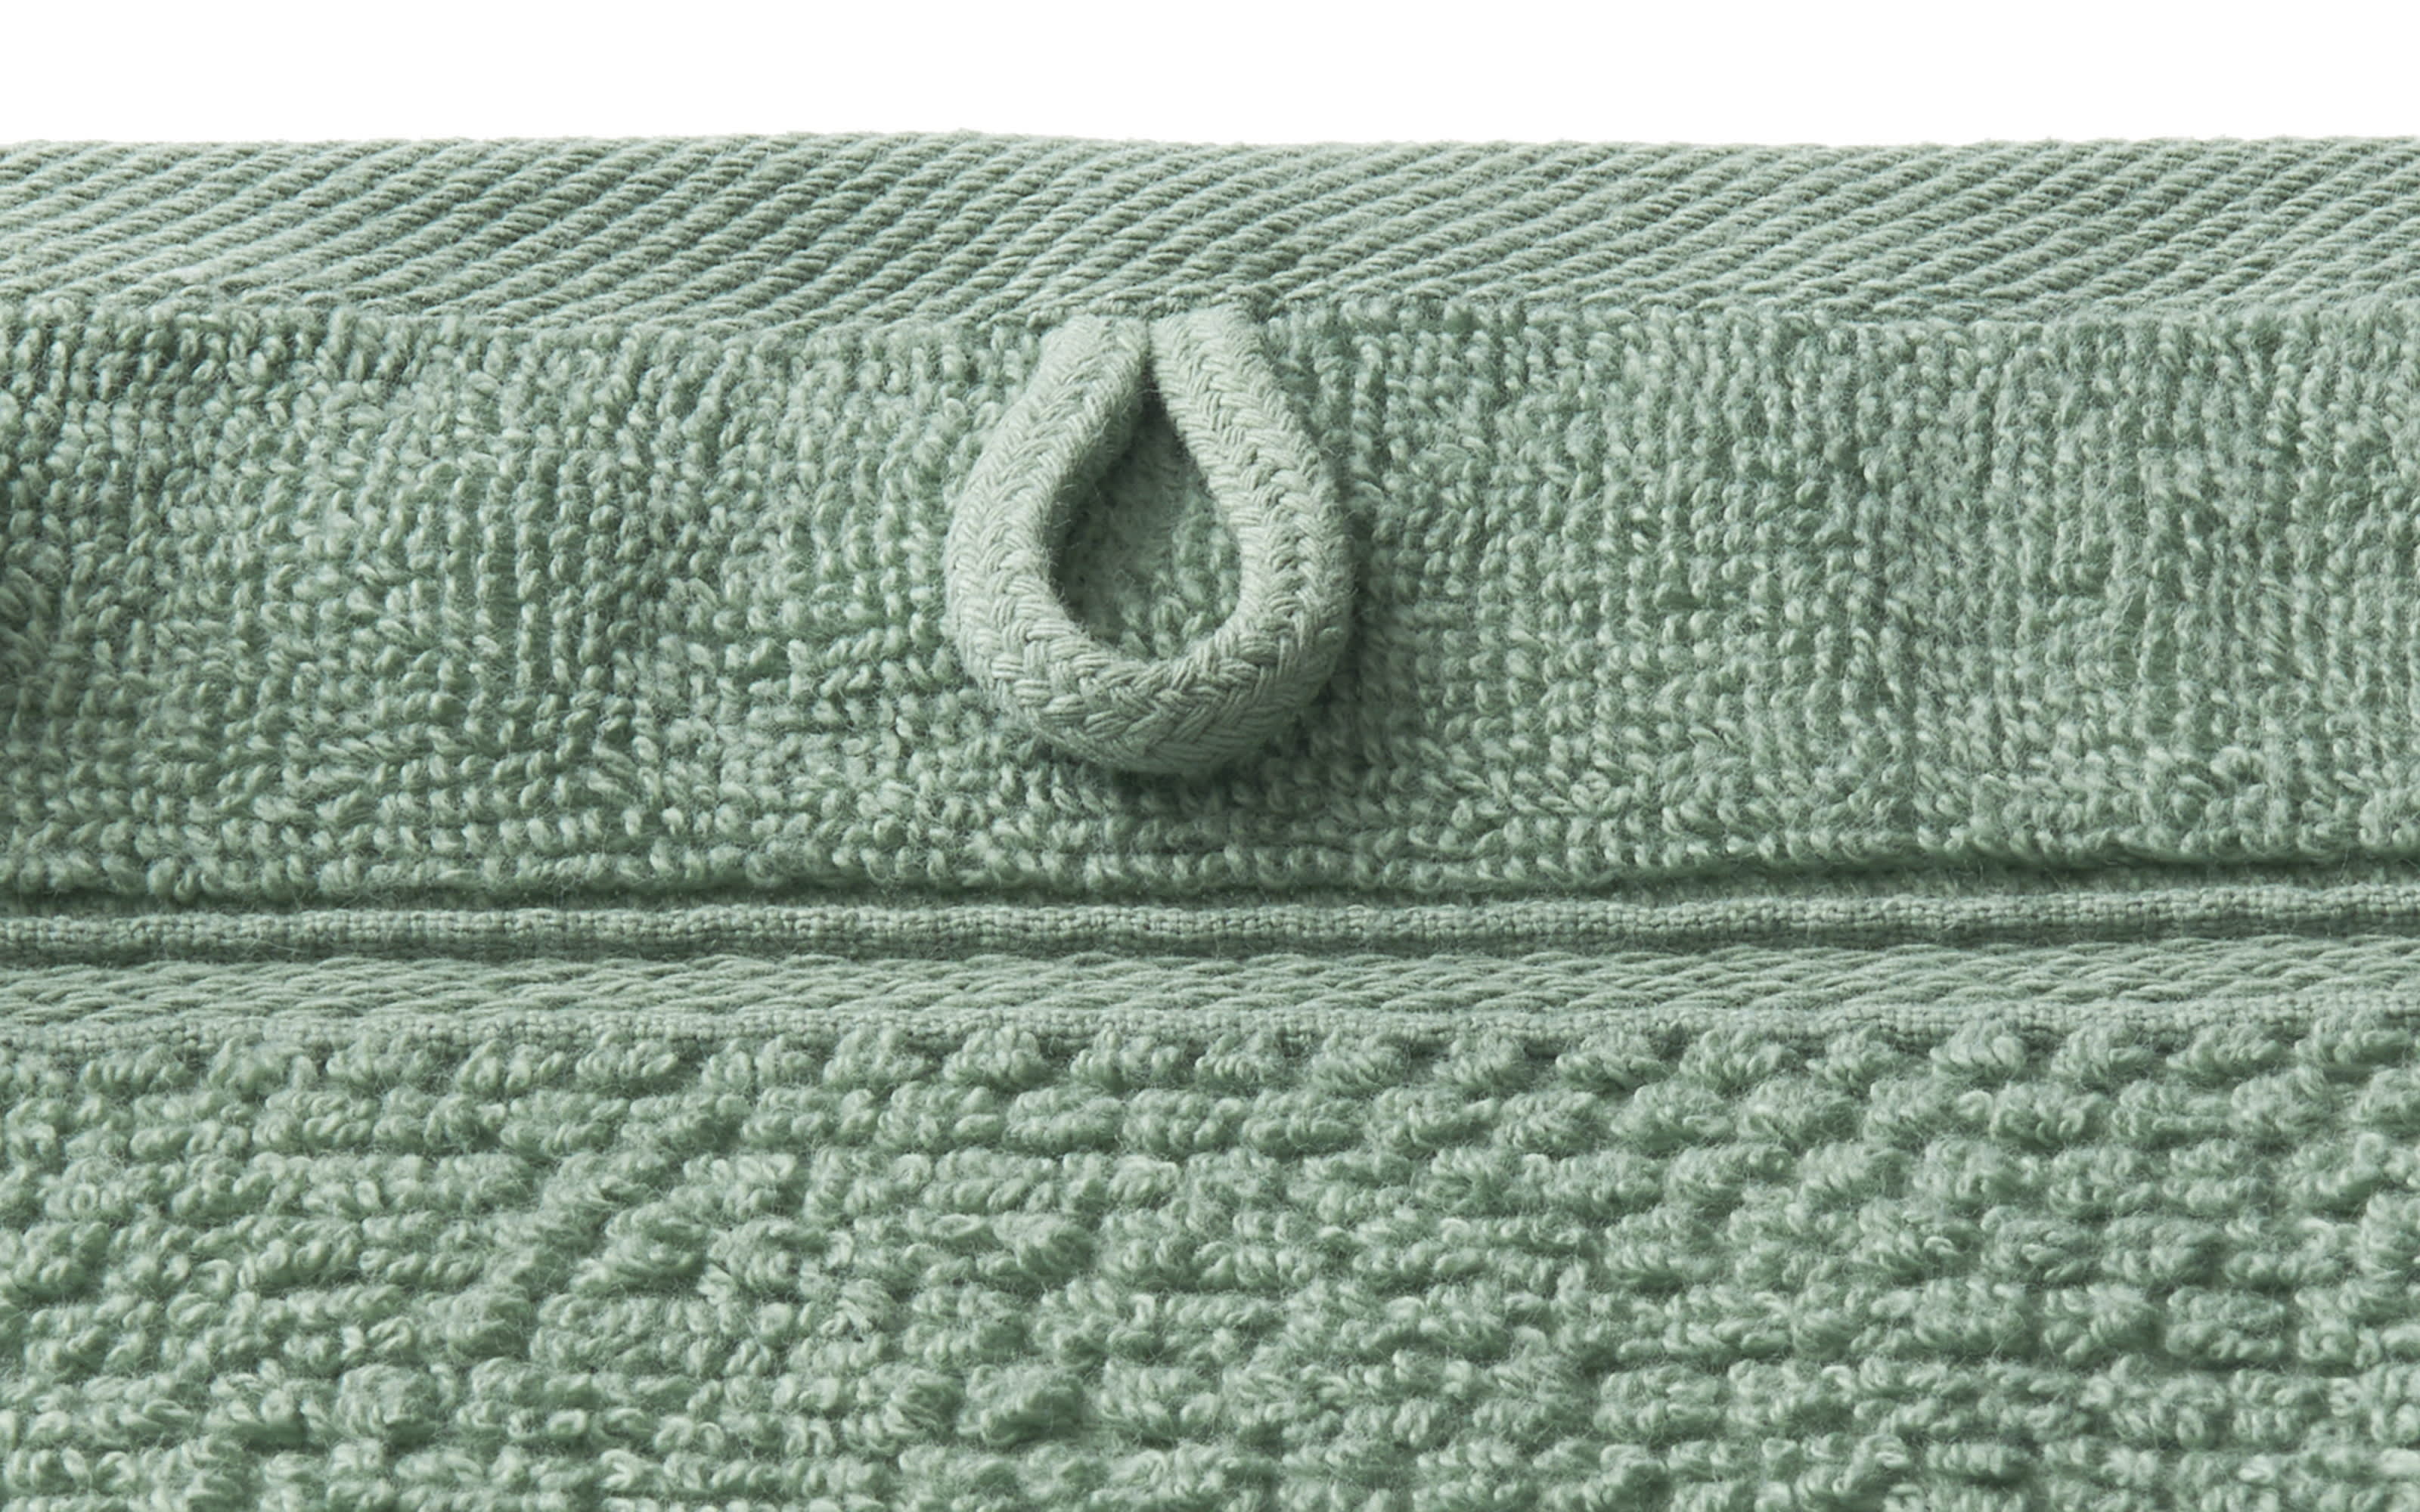 Handtuch Solid, salbei, 50 x 100 cm